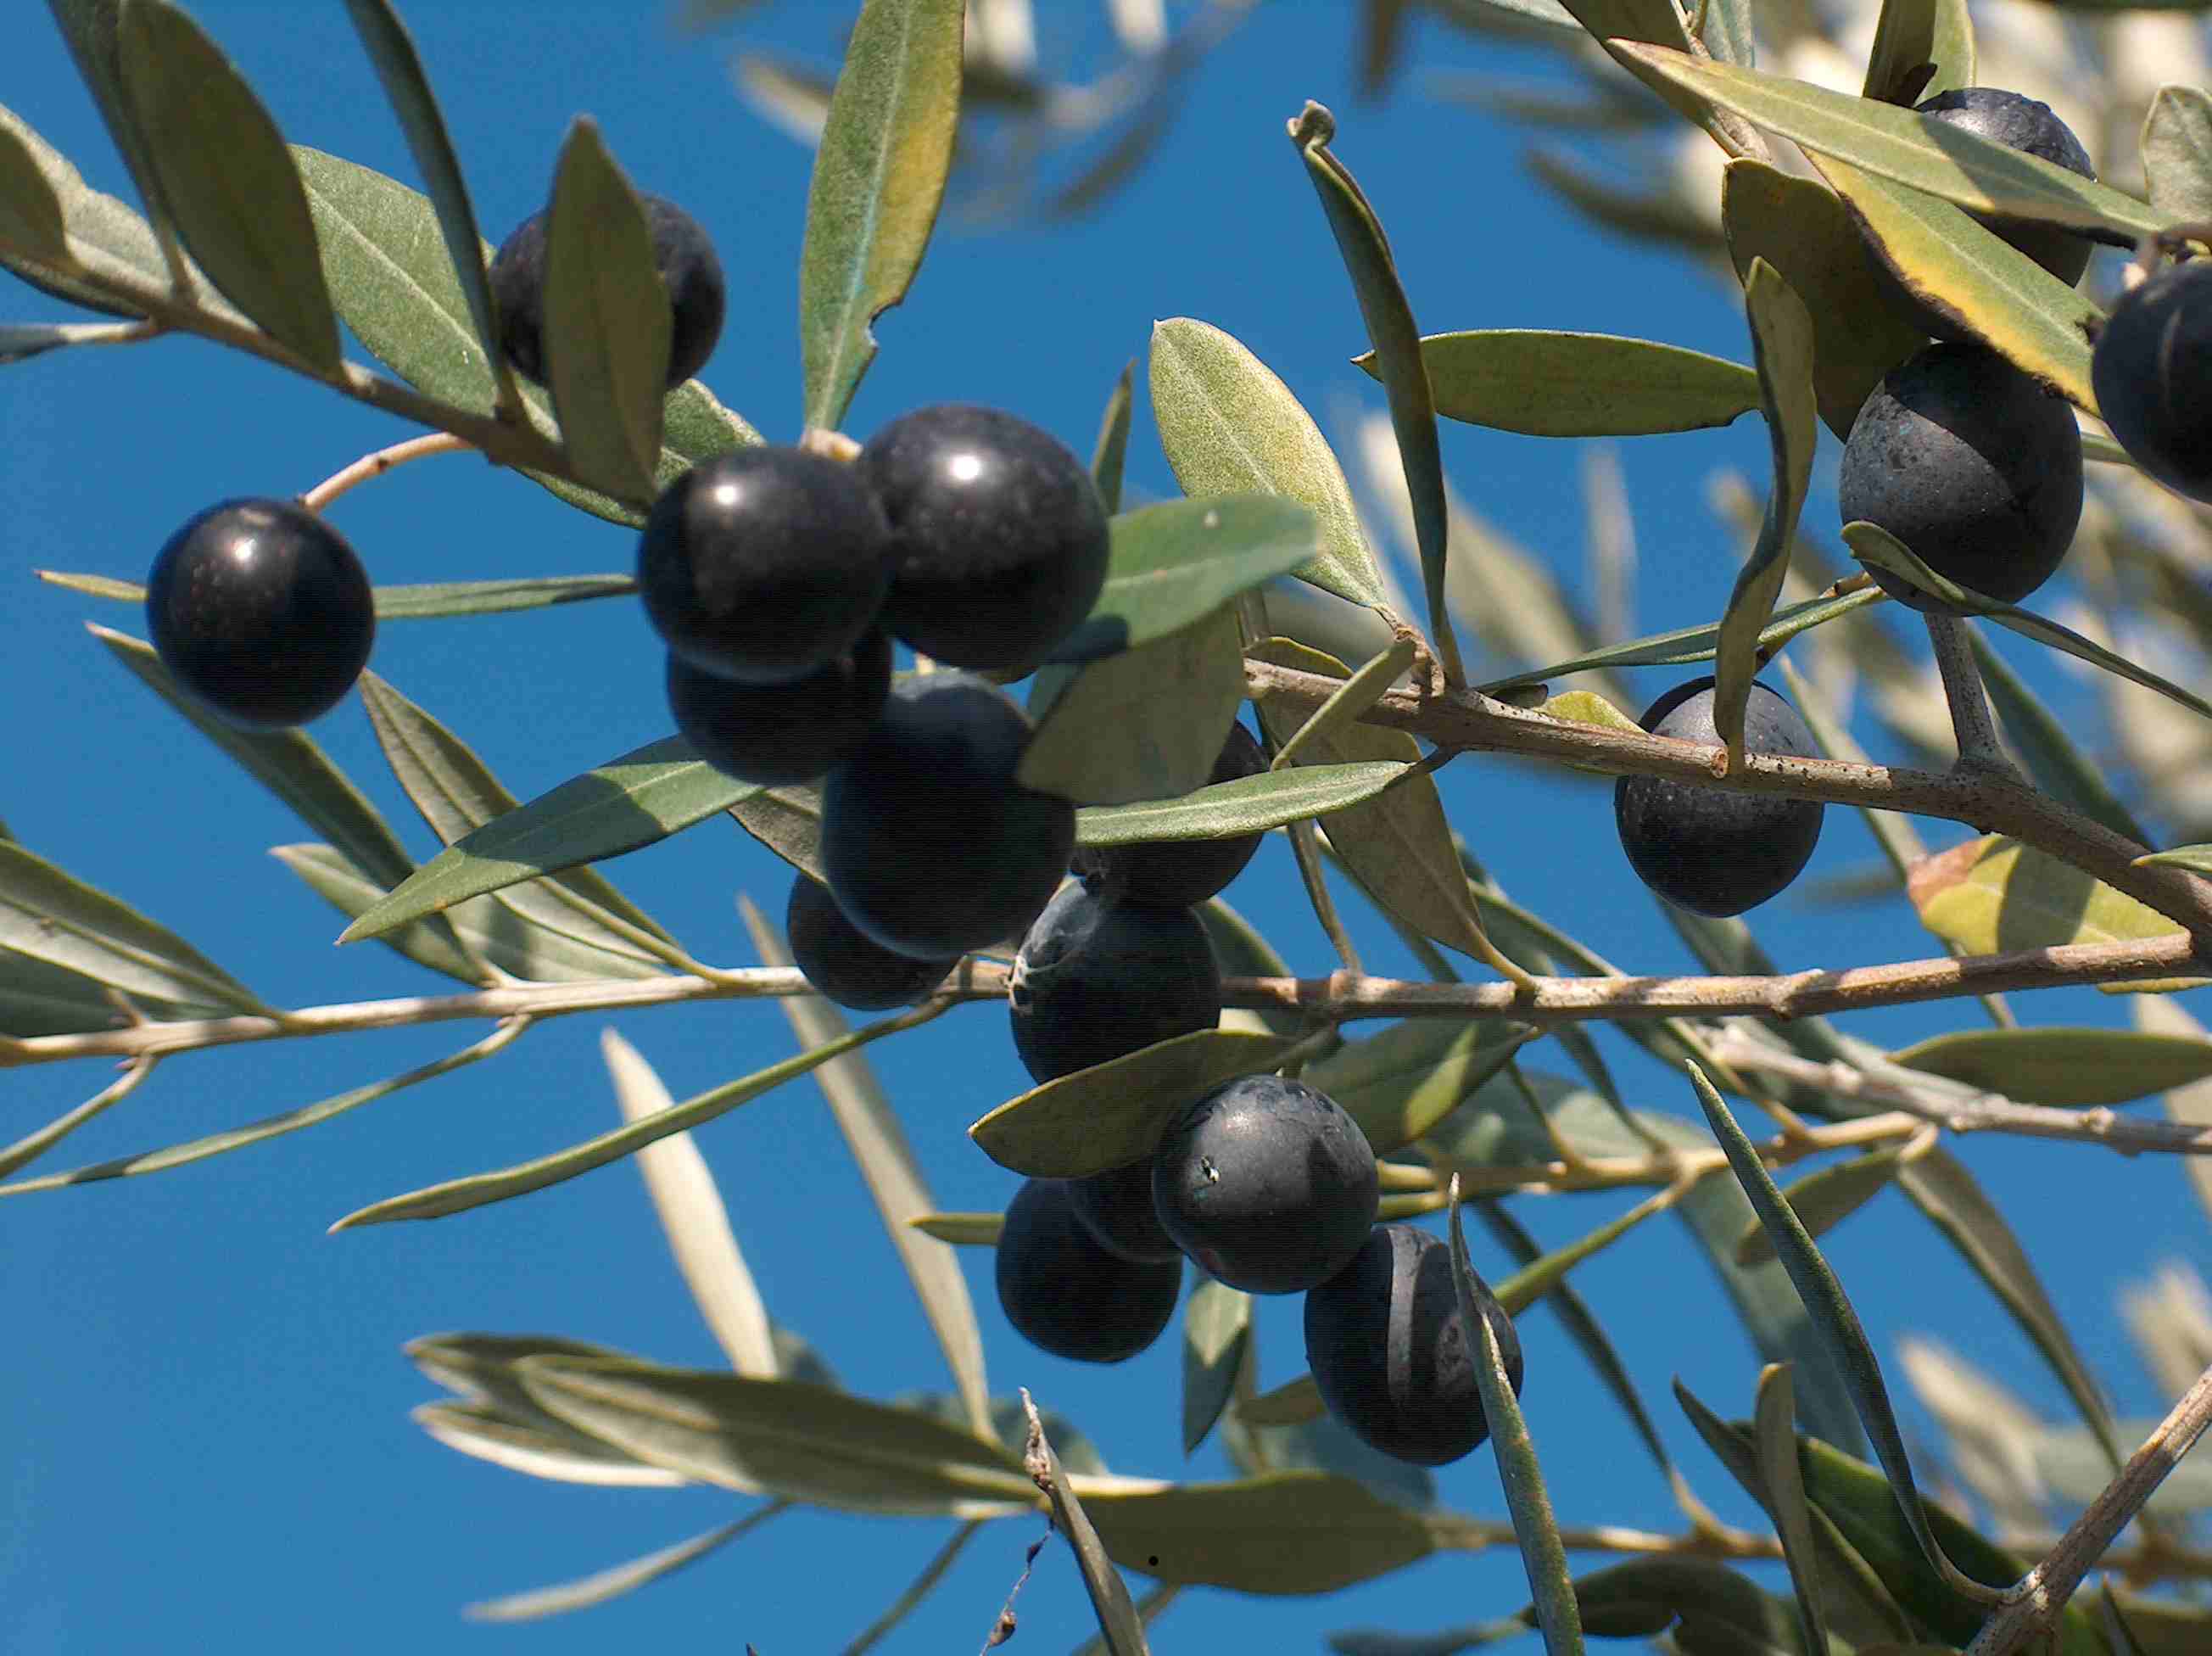  Sequestrate dai Nas di Caserta 20 tonnellate di olive